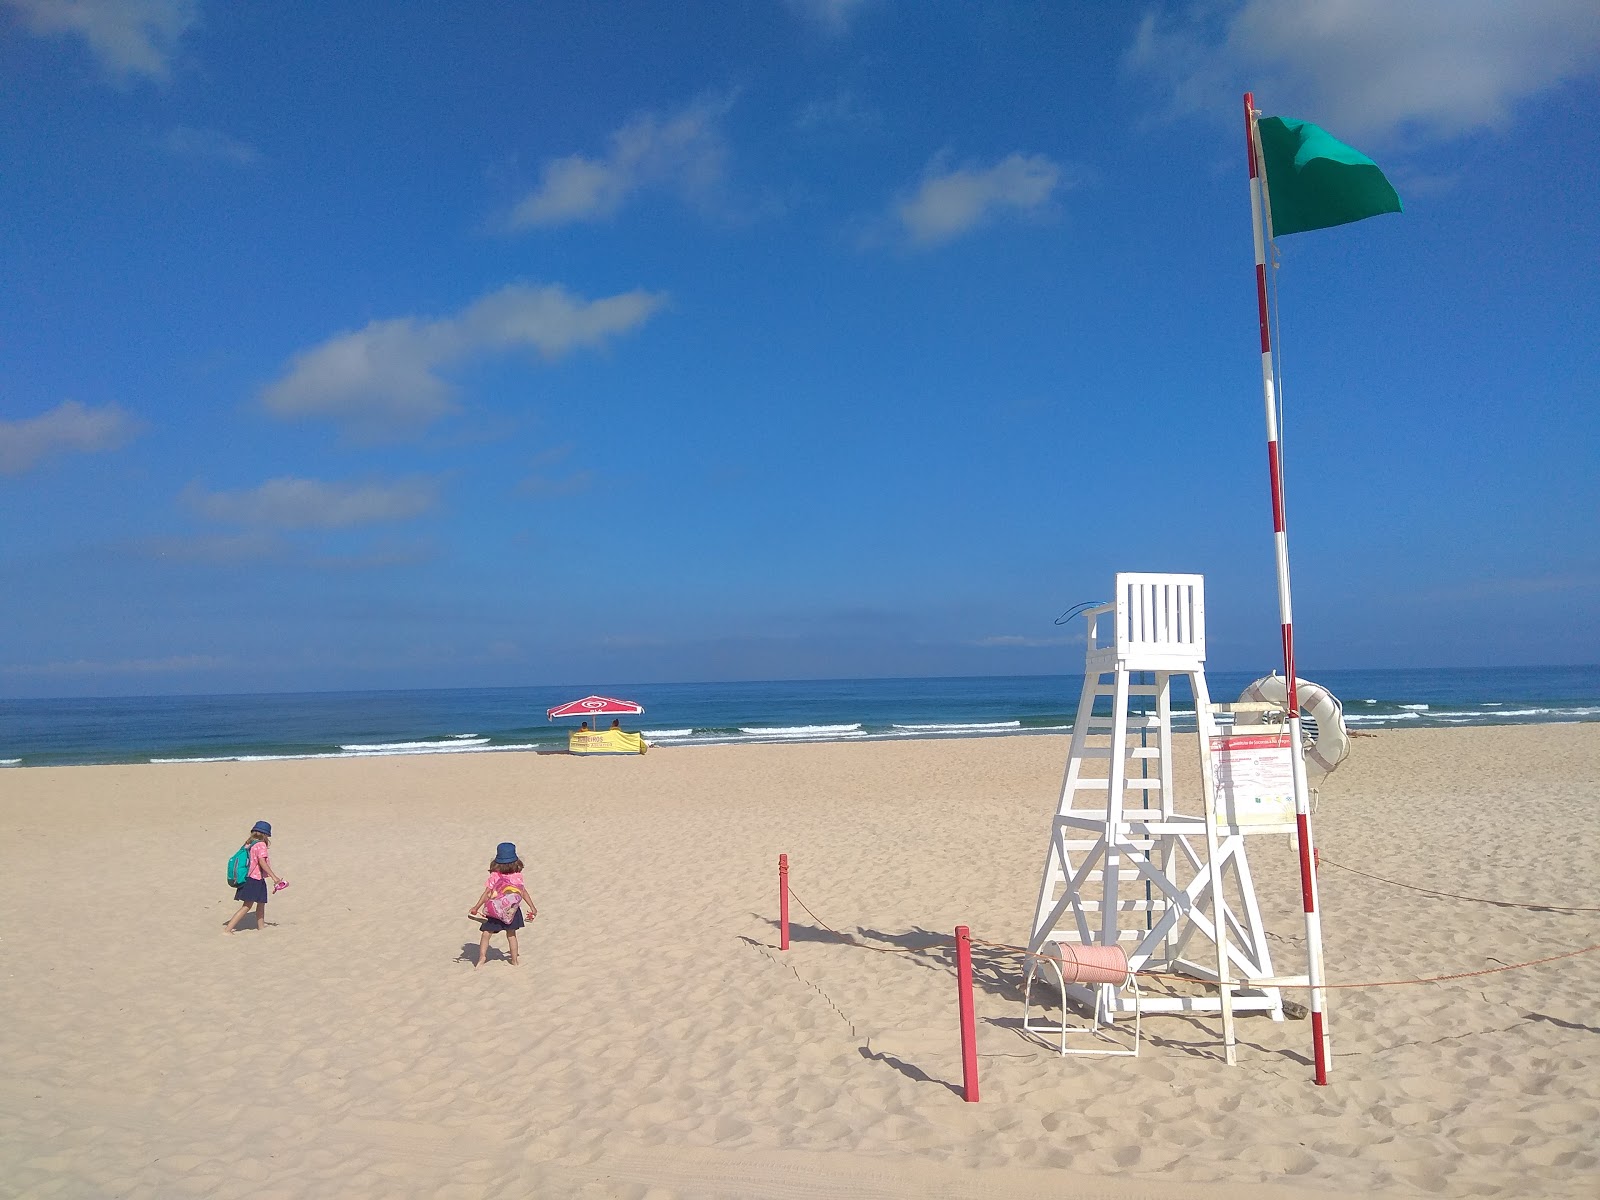 Praia de Mira'in fotoğrafı - rahatlamayı sevenler arasında popüler bir yer